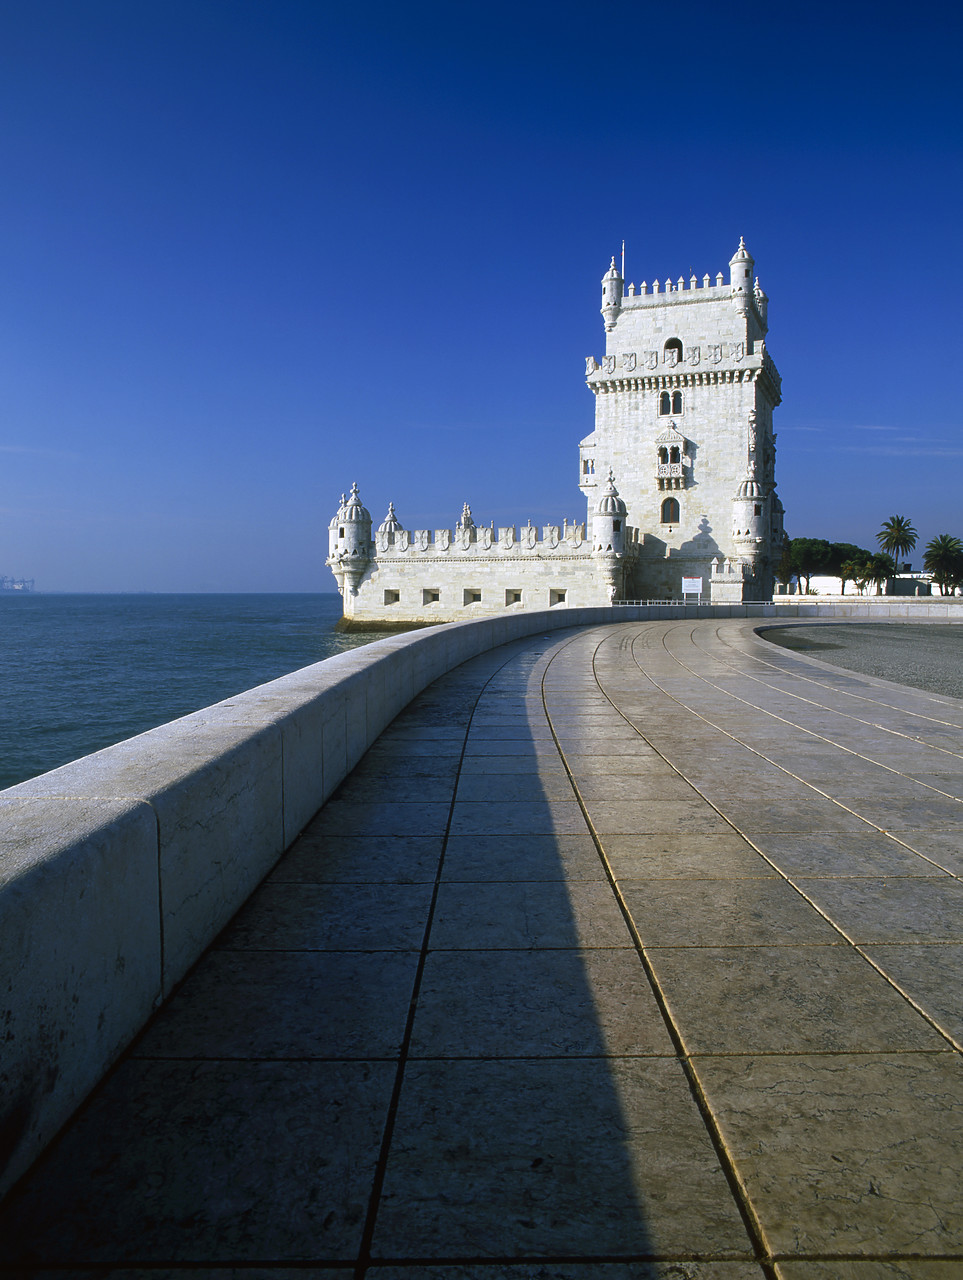 #060798-2 - Belem Tower, Lisbon, Portugal